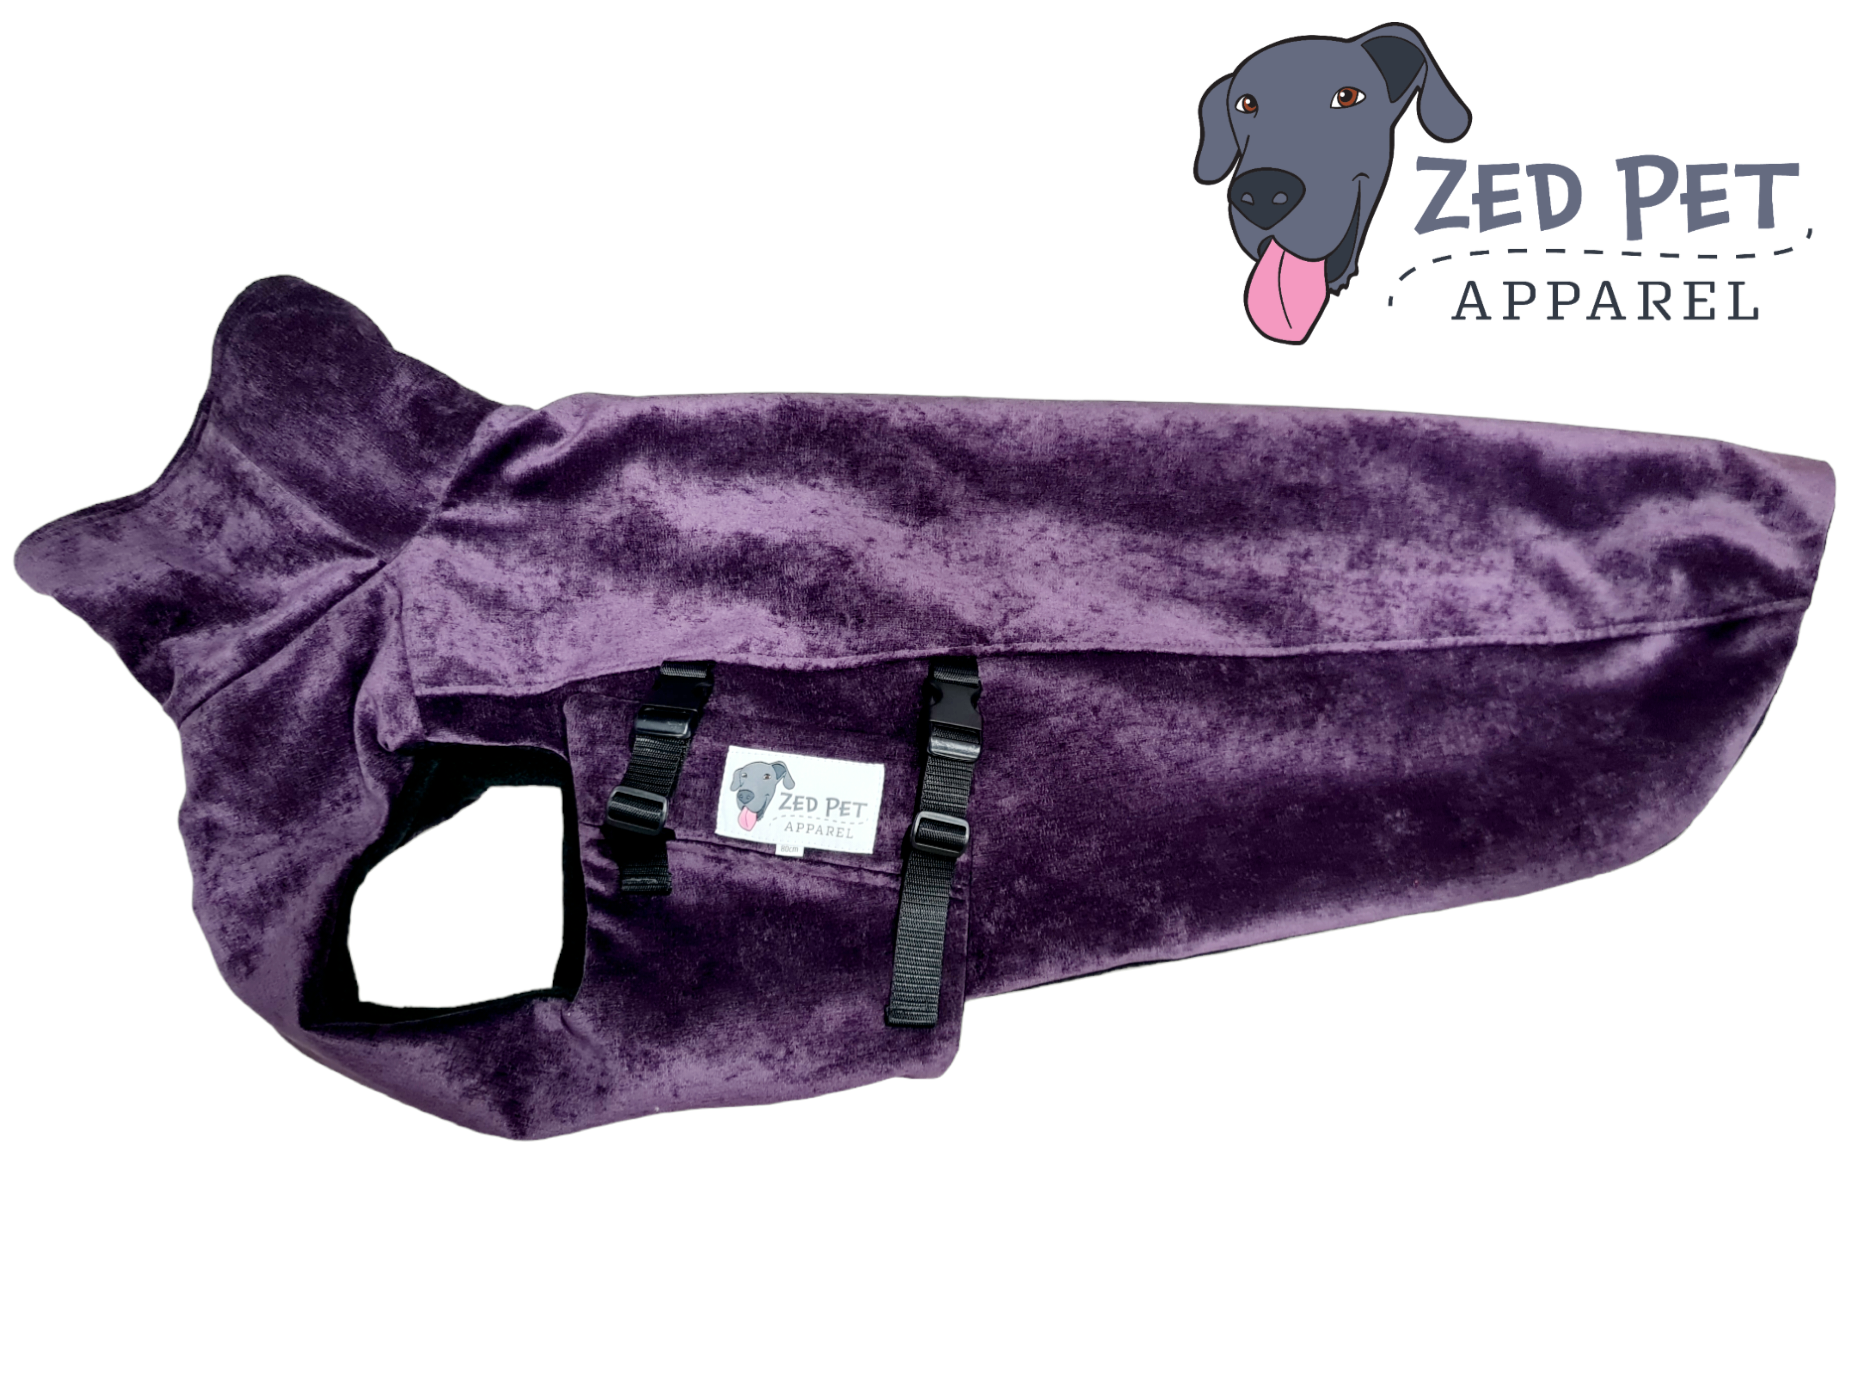 Shiny purple dog coat jacket with turtle neck